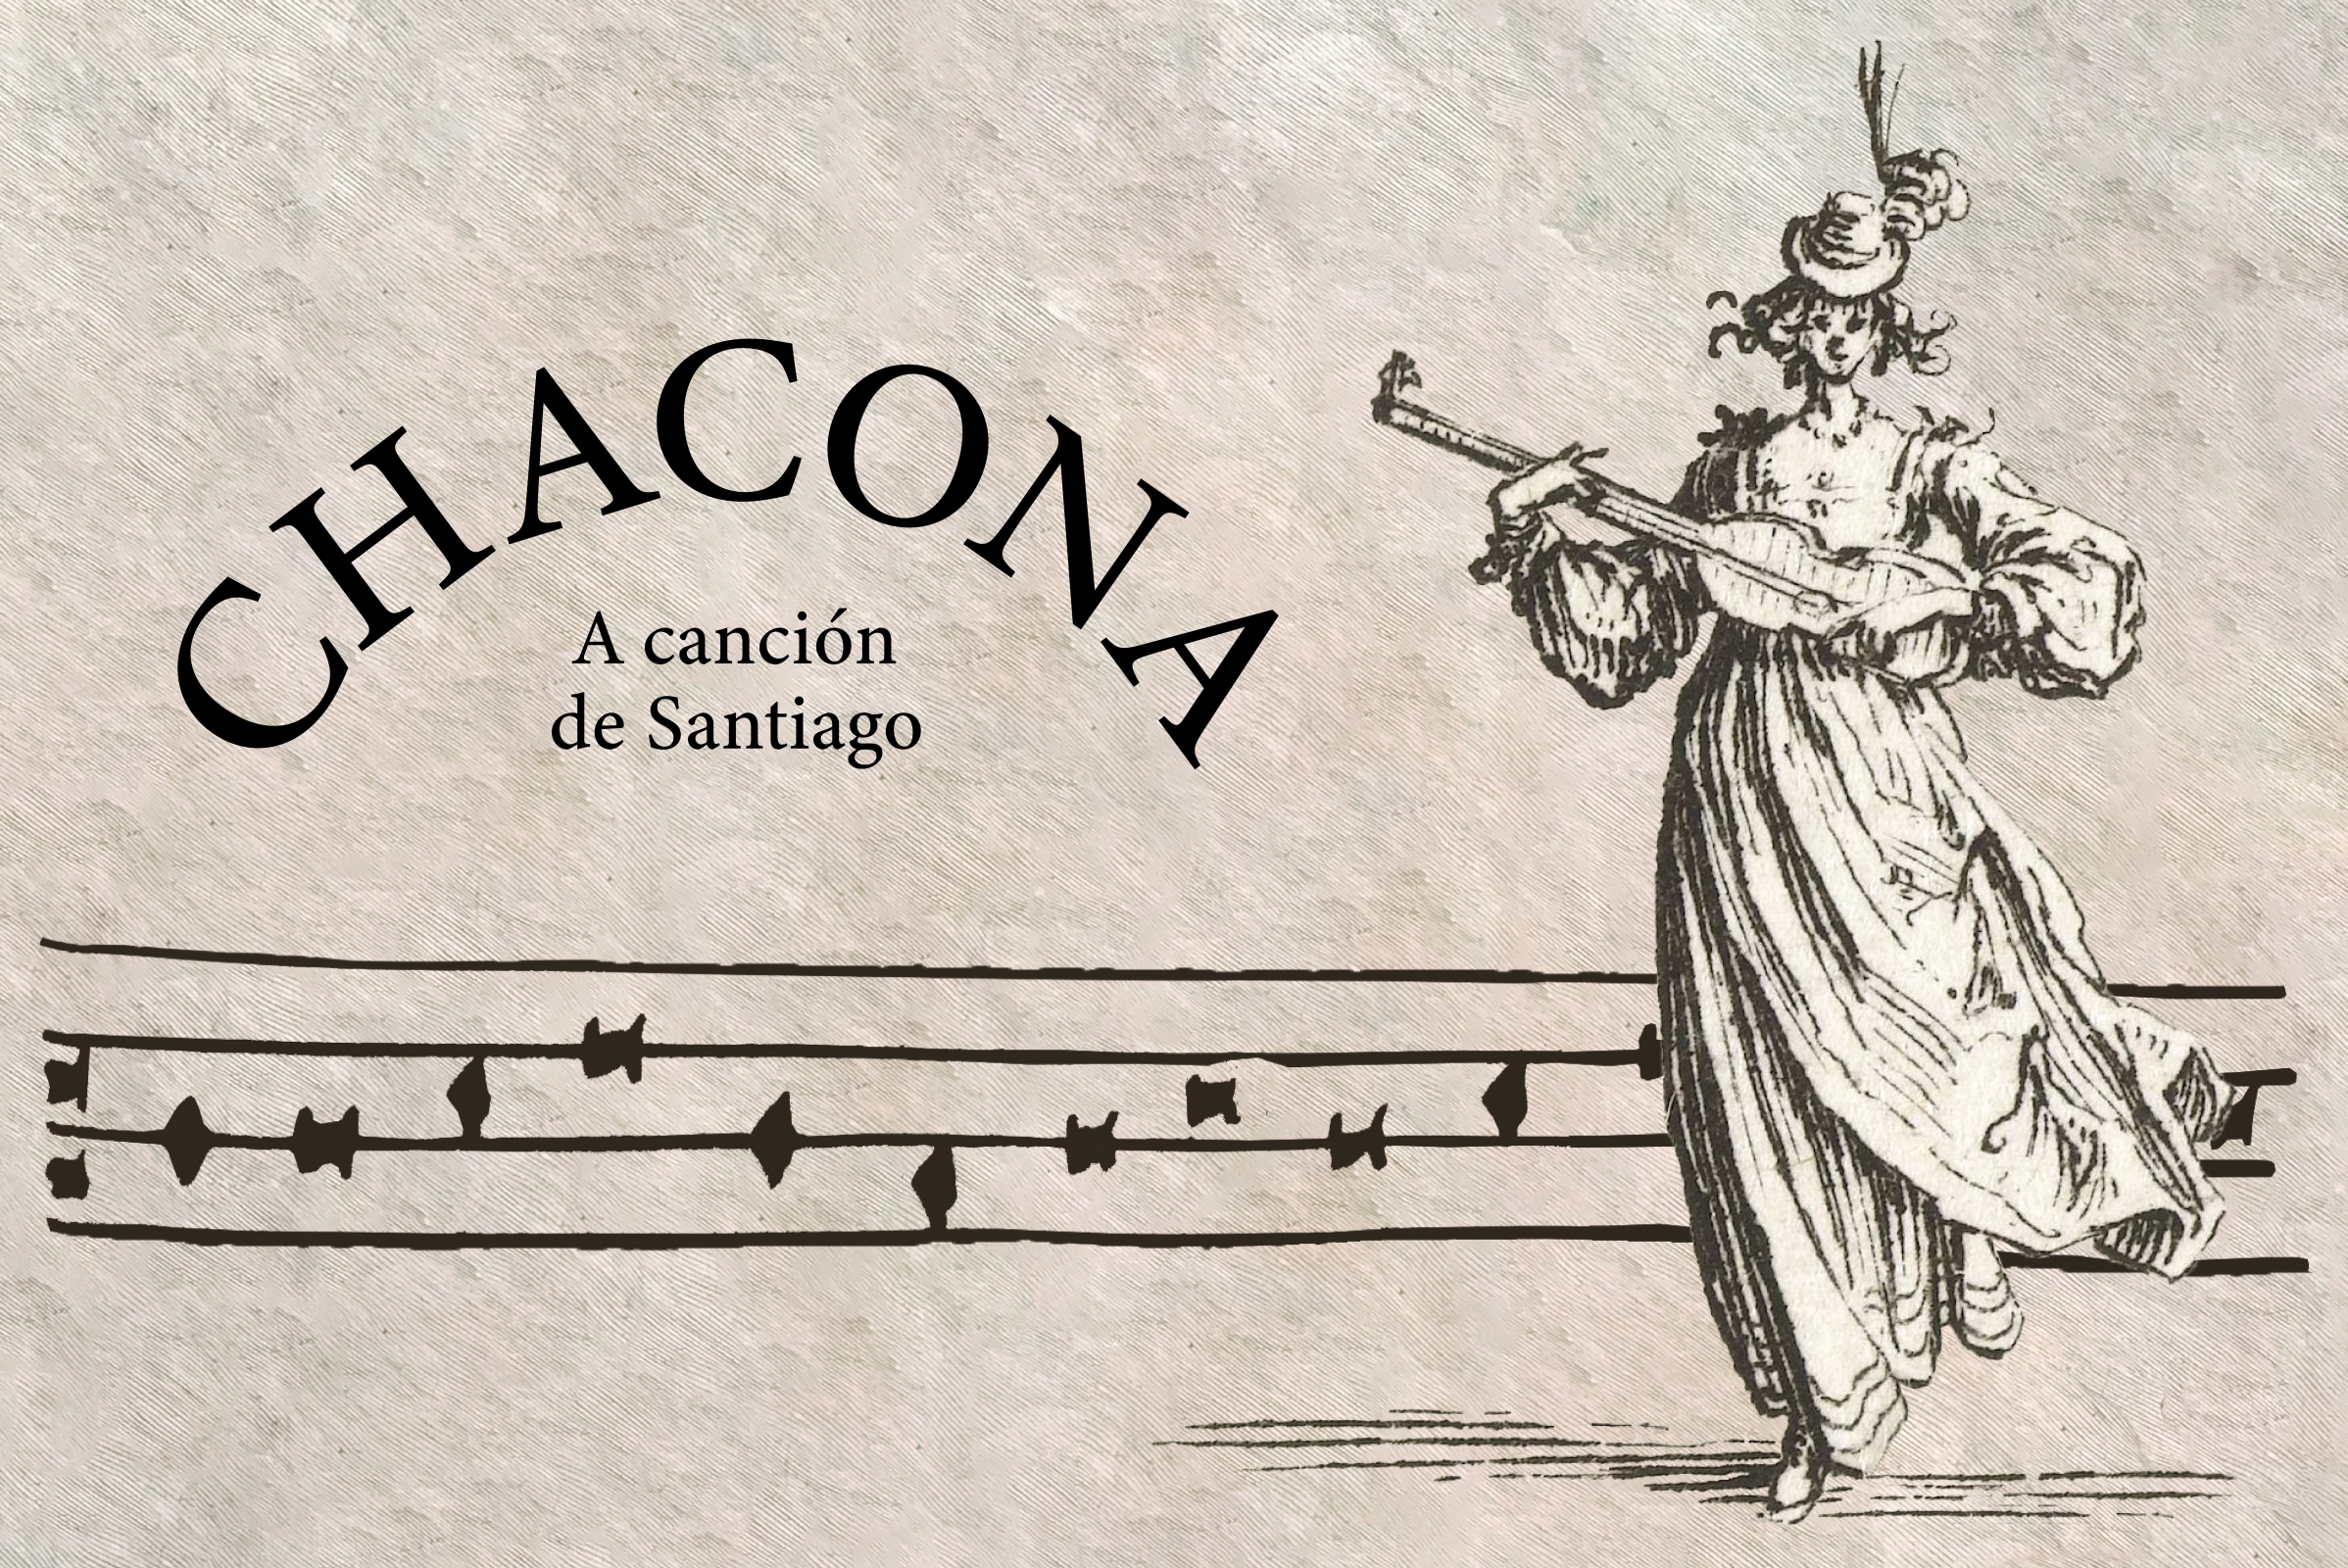 Chacona. A canción de Santiago
